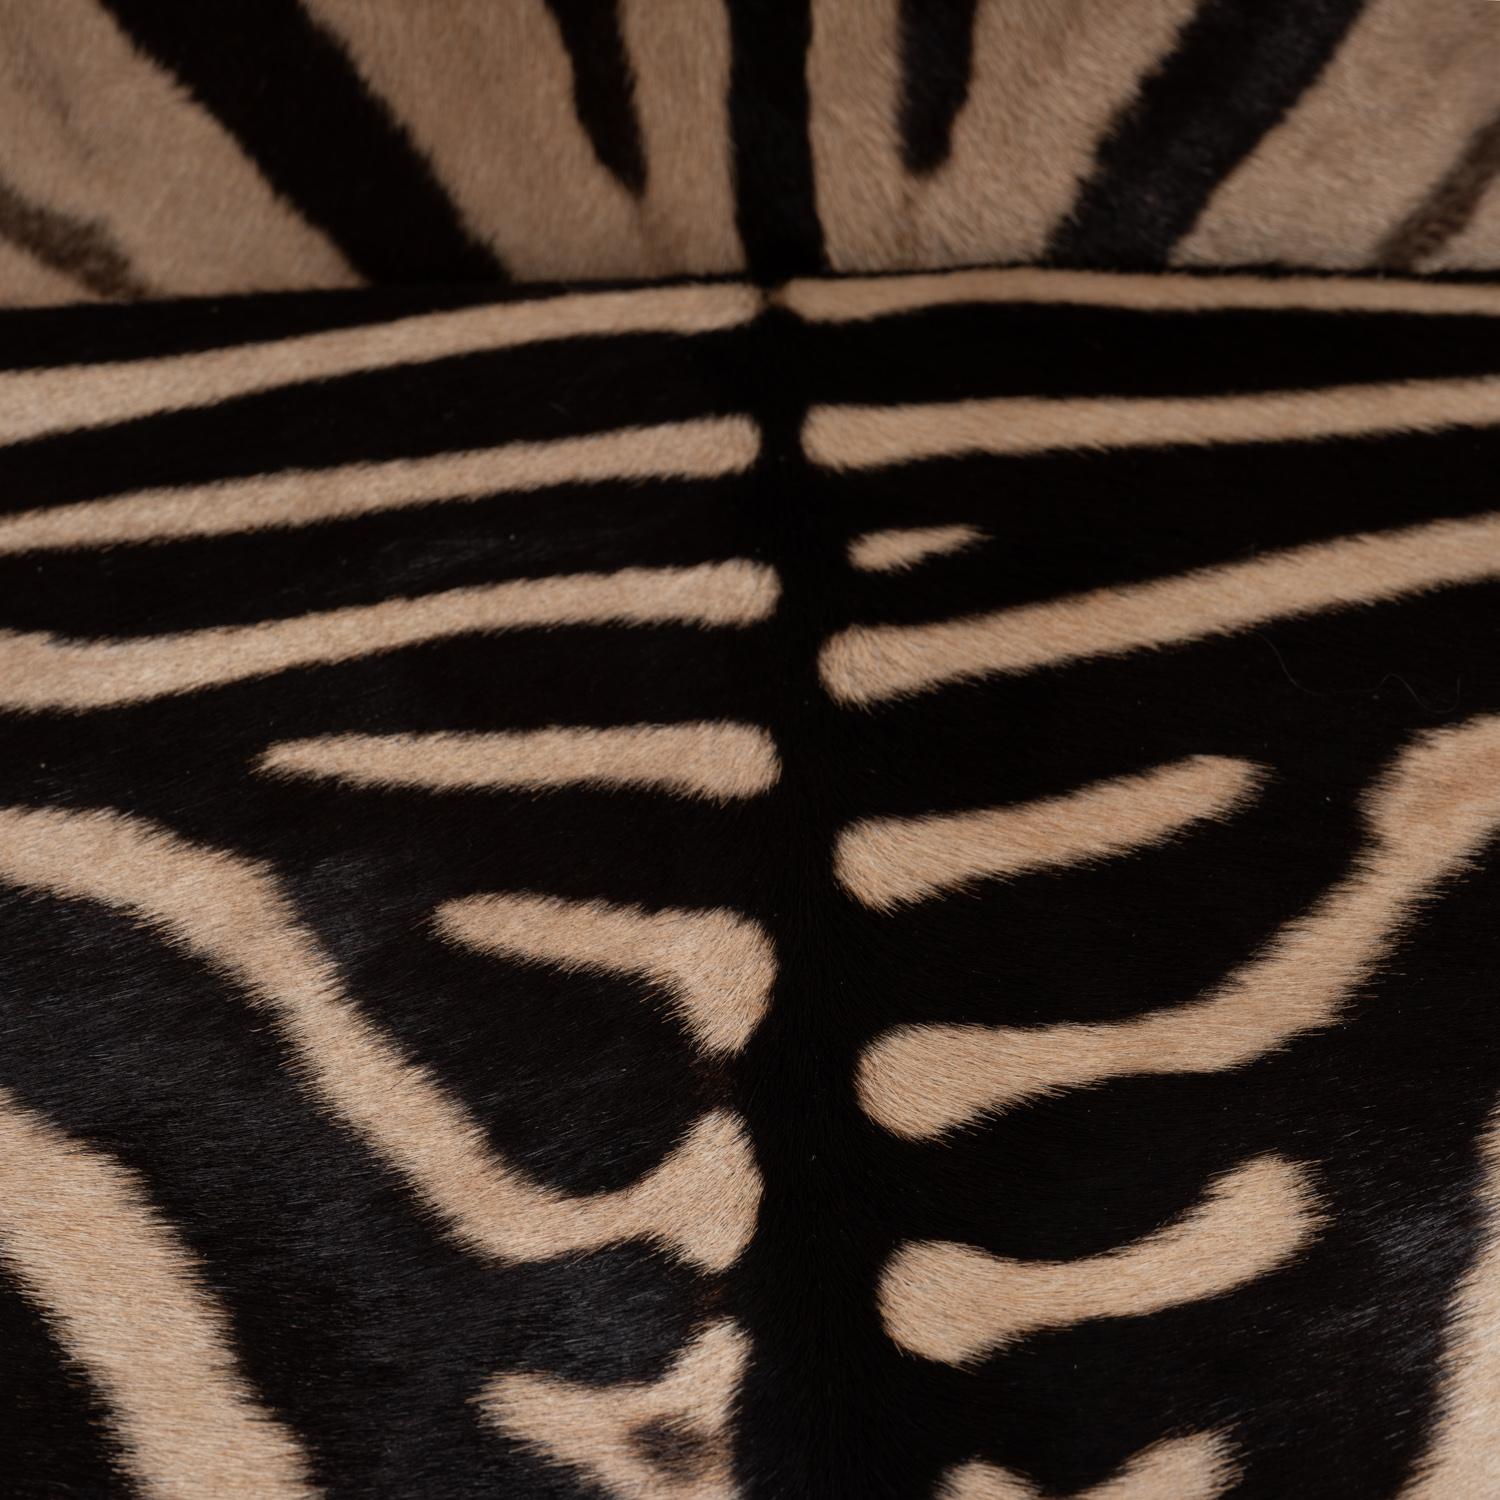 Zebra Hide Settee